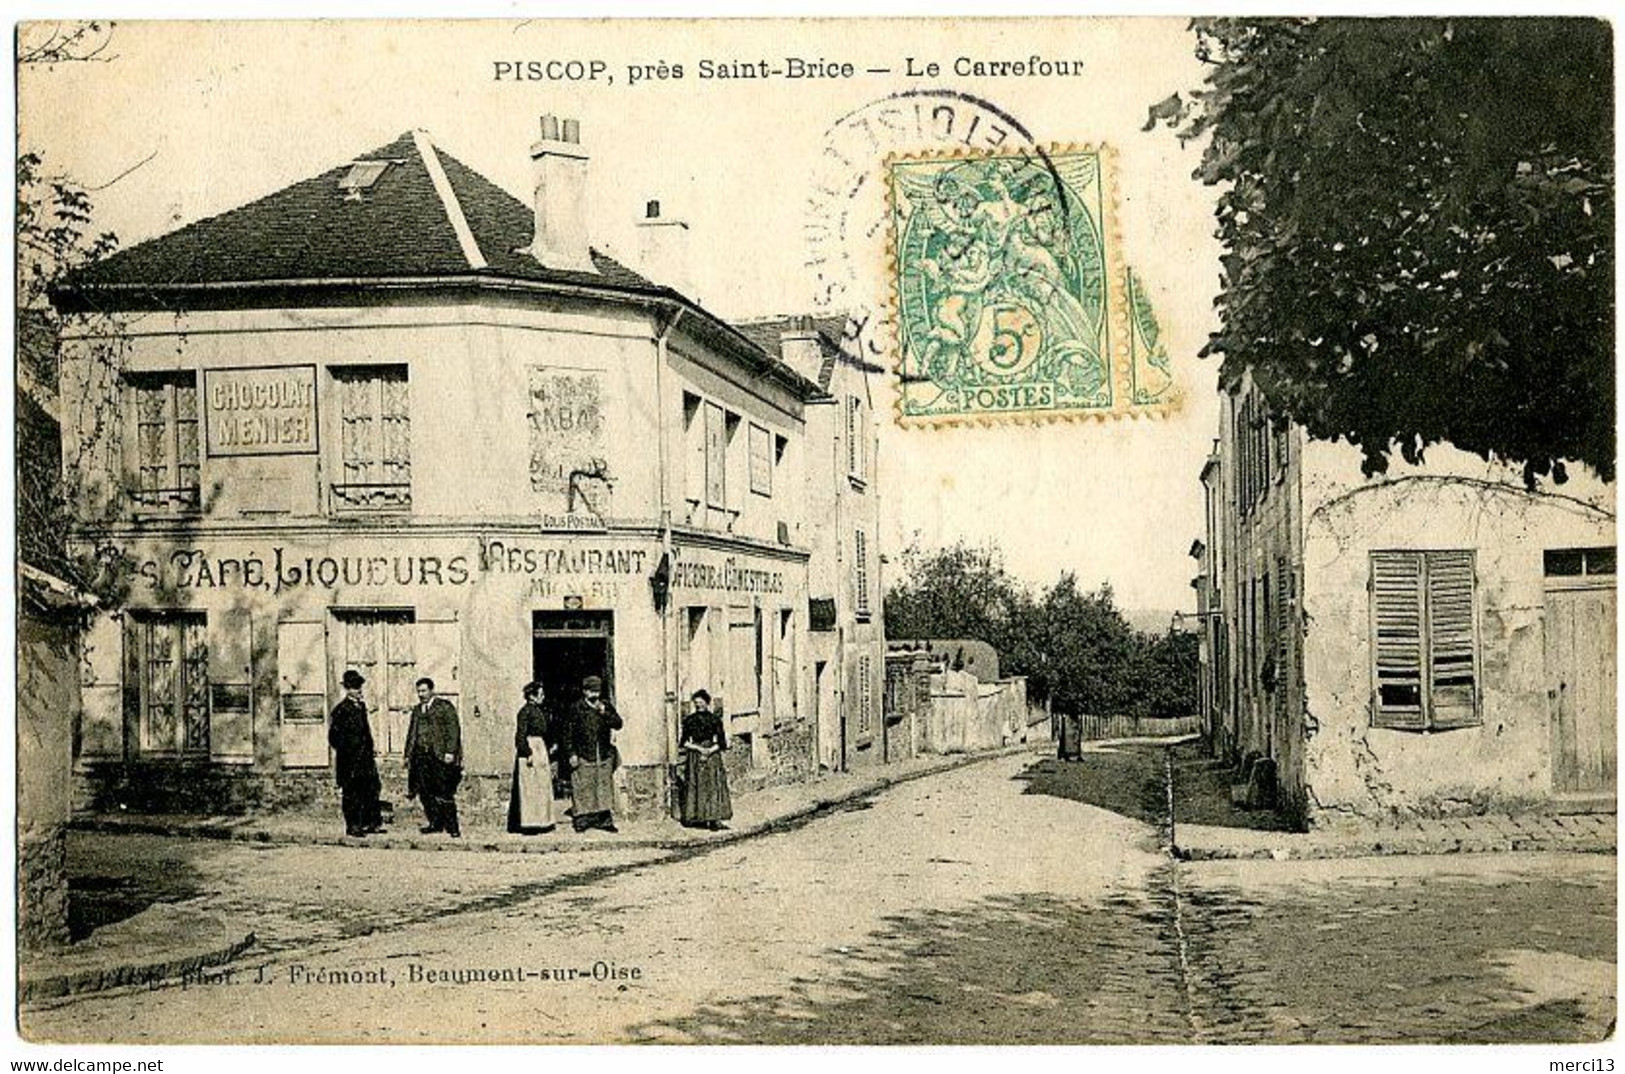 PISCOP, Près Saint-Brice (95) – Le Carrefour. Café-Restaurant-Epicerie. Editeur J. Frémont, Beaumont-sur-Oise. - Pontcelles